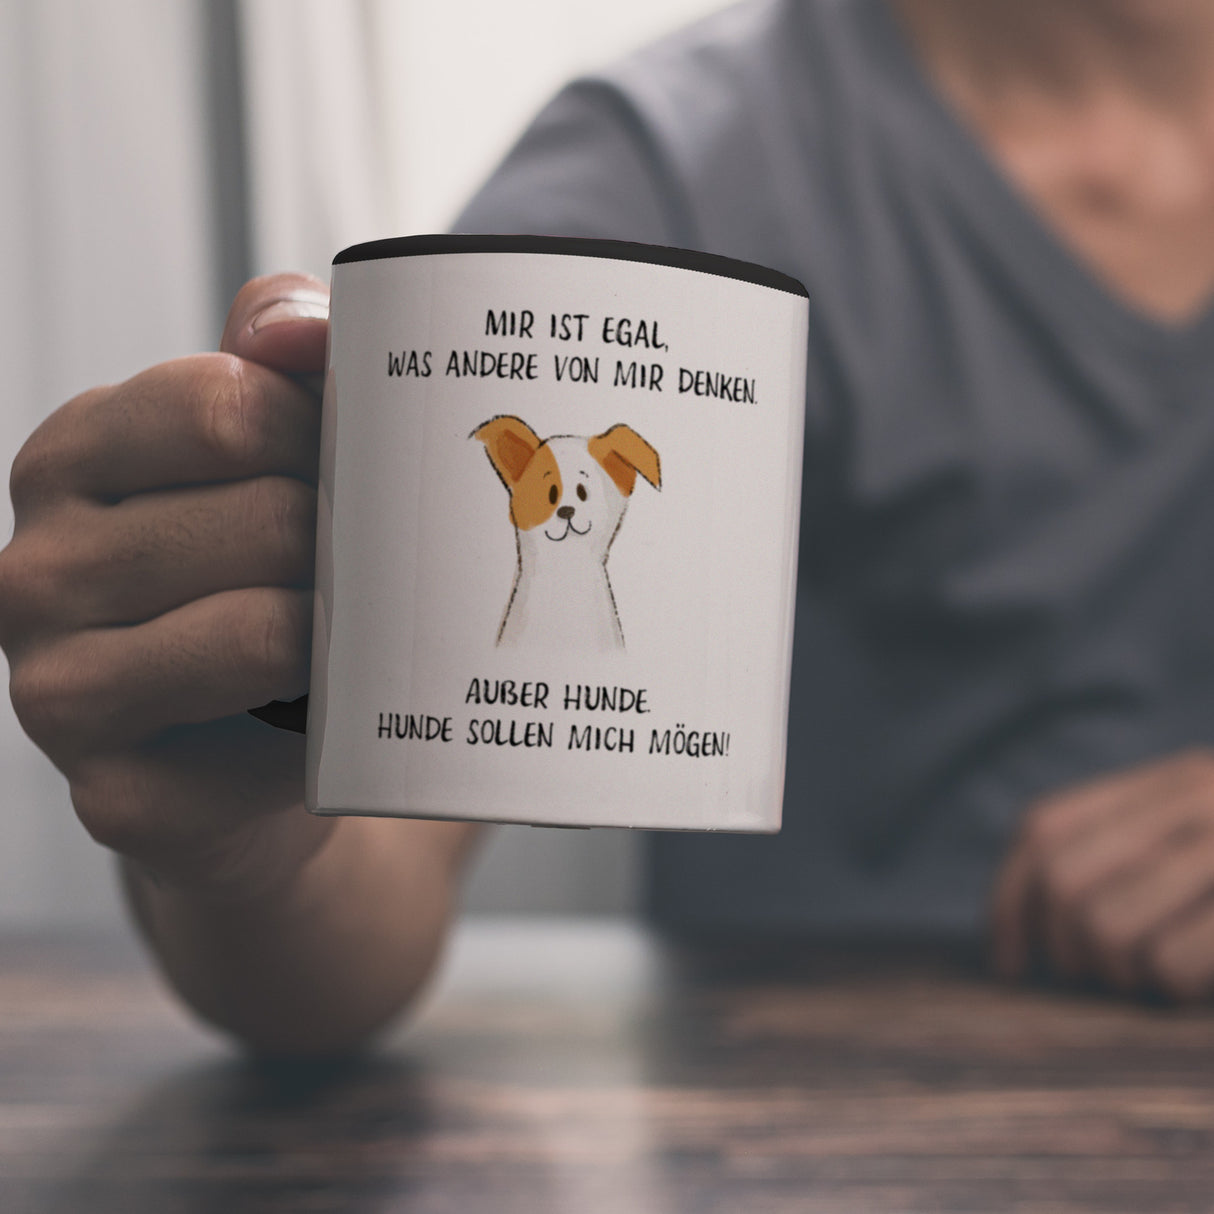 Ist mir egal was Andere denken Kaffeebecher mit Spruch Außer Hunde